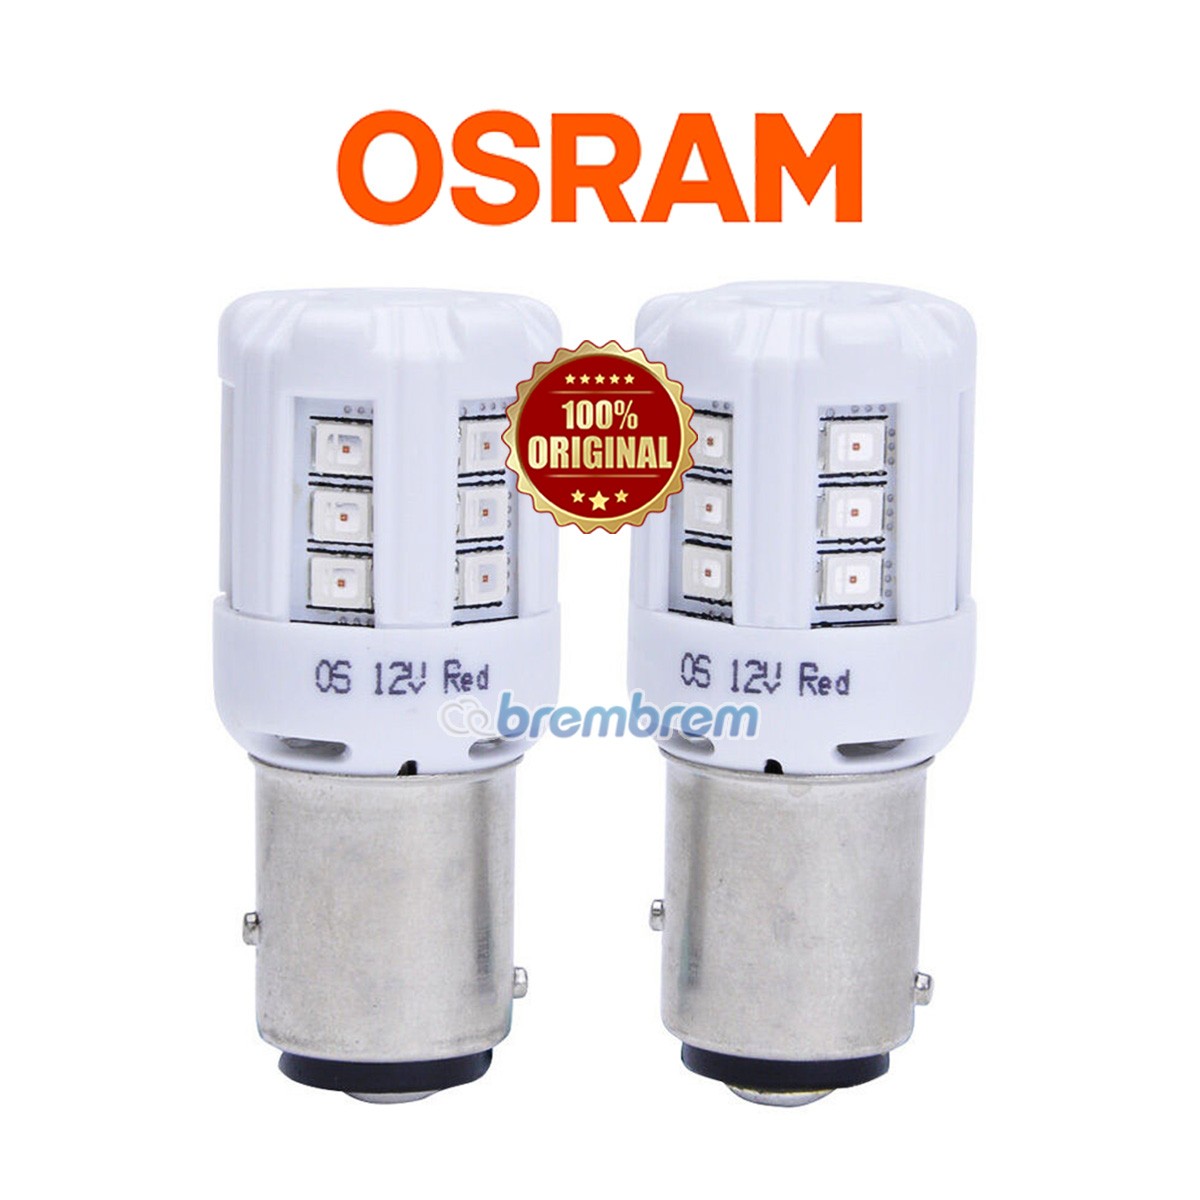 OSRAM RETROFIT 1457 RED (P21/5) - LAMPU REM PUTER LED MOBIL